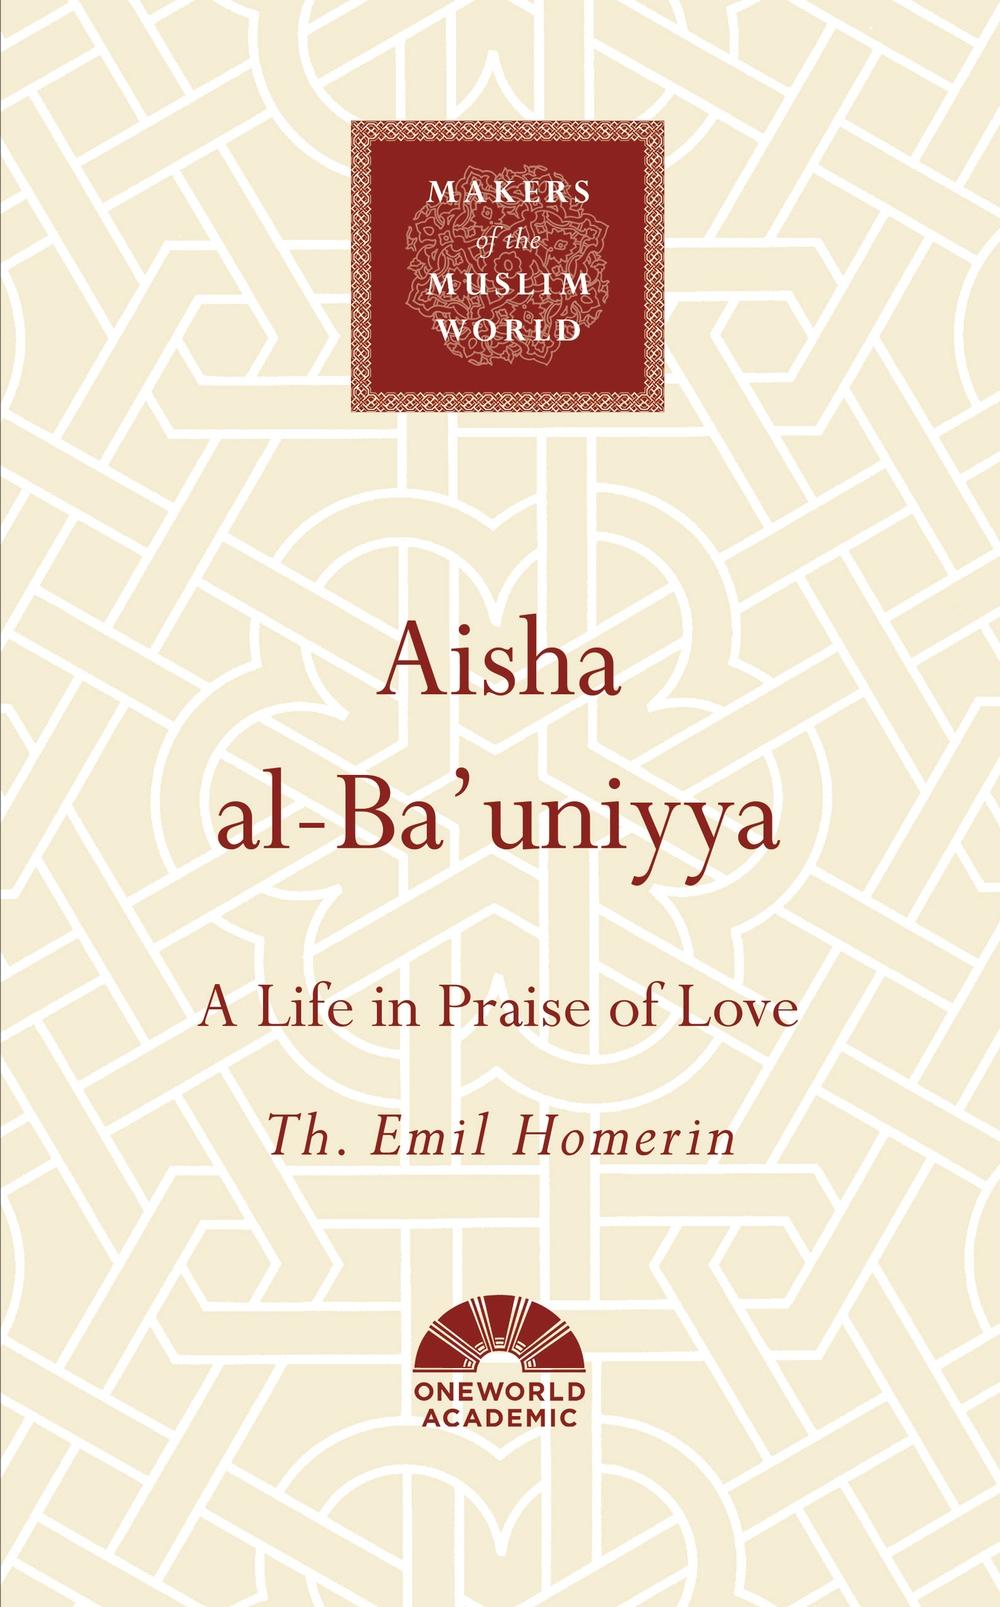 Aisha al-Ba'uniyya - Th. Emil Homerin